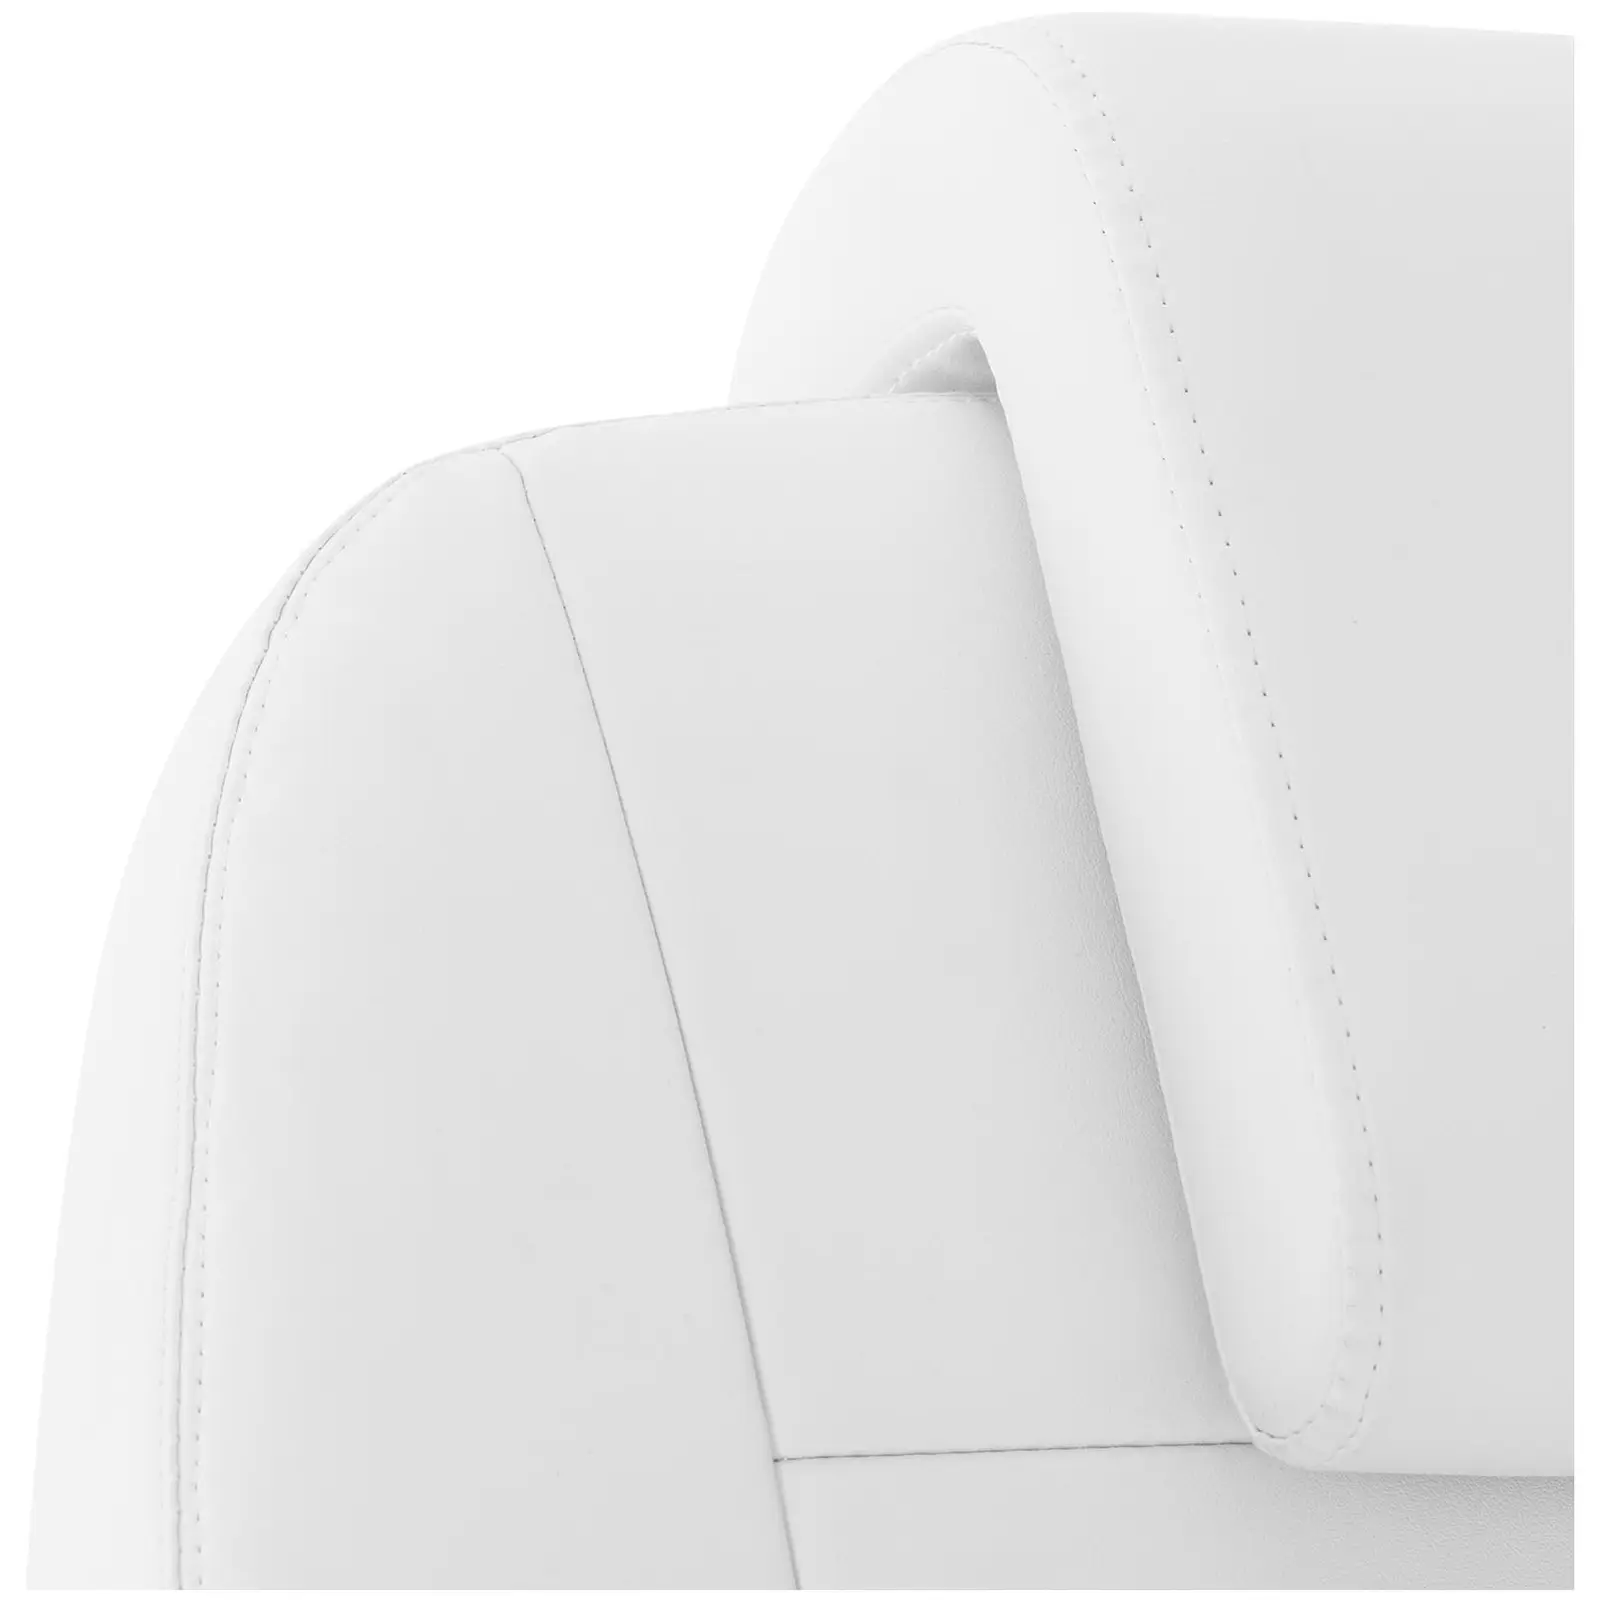 fauteuil esthétique - 200 W - 150 kg - Blanc